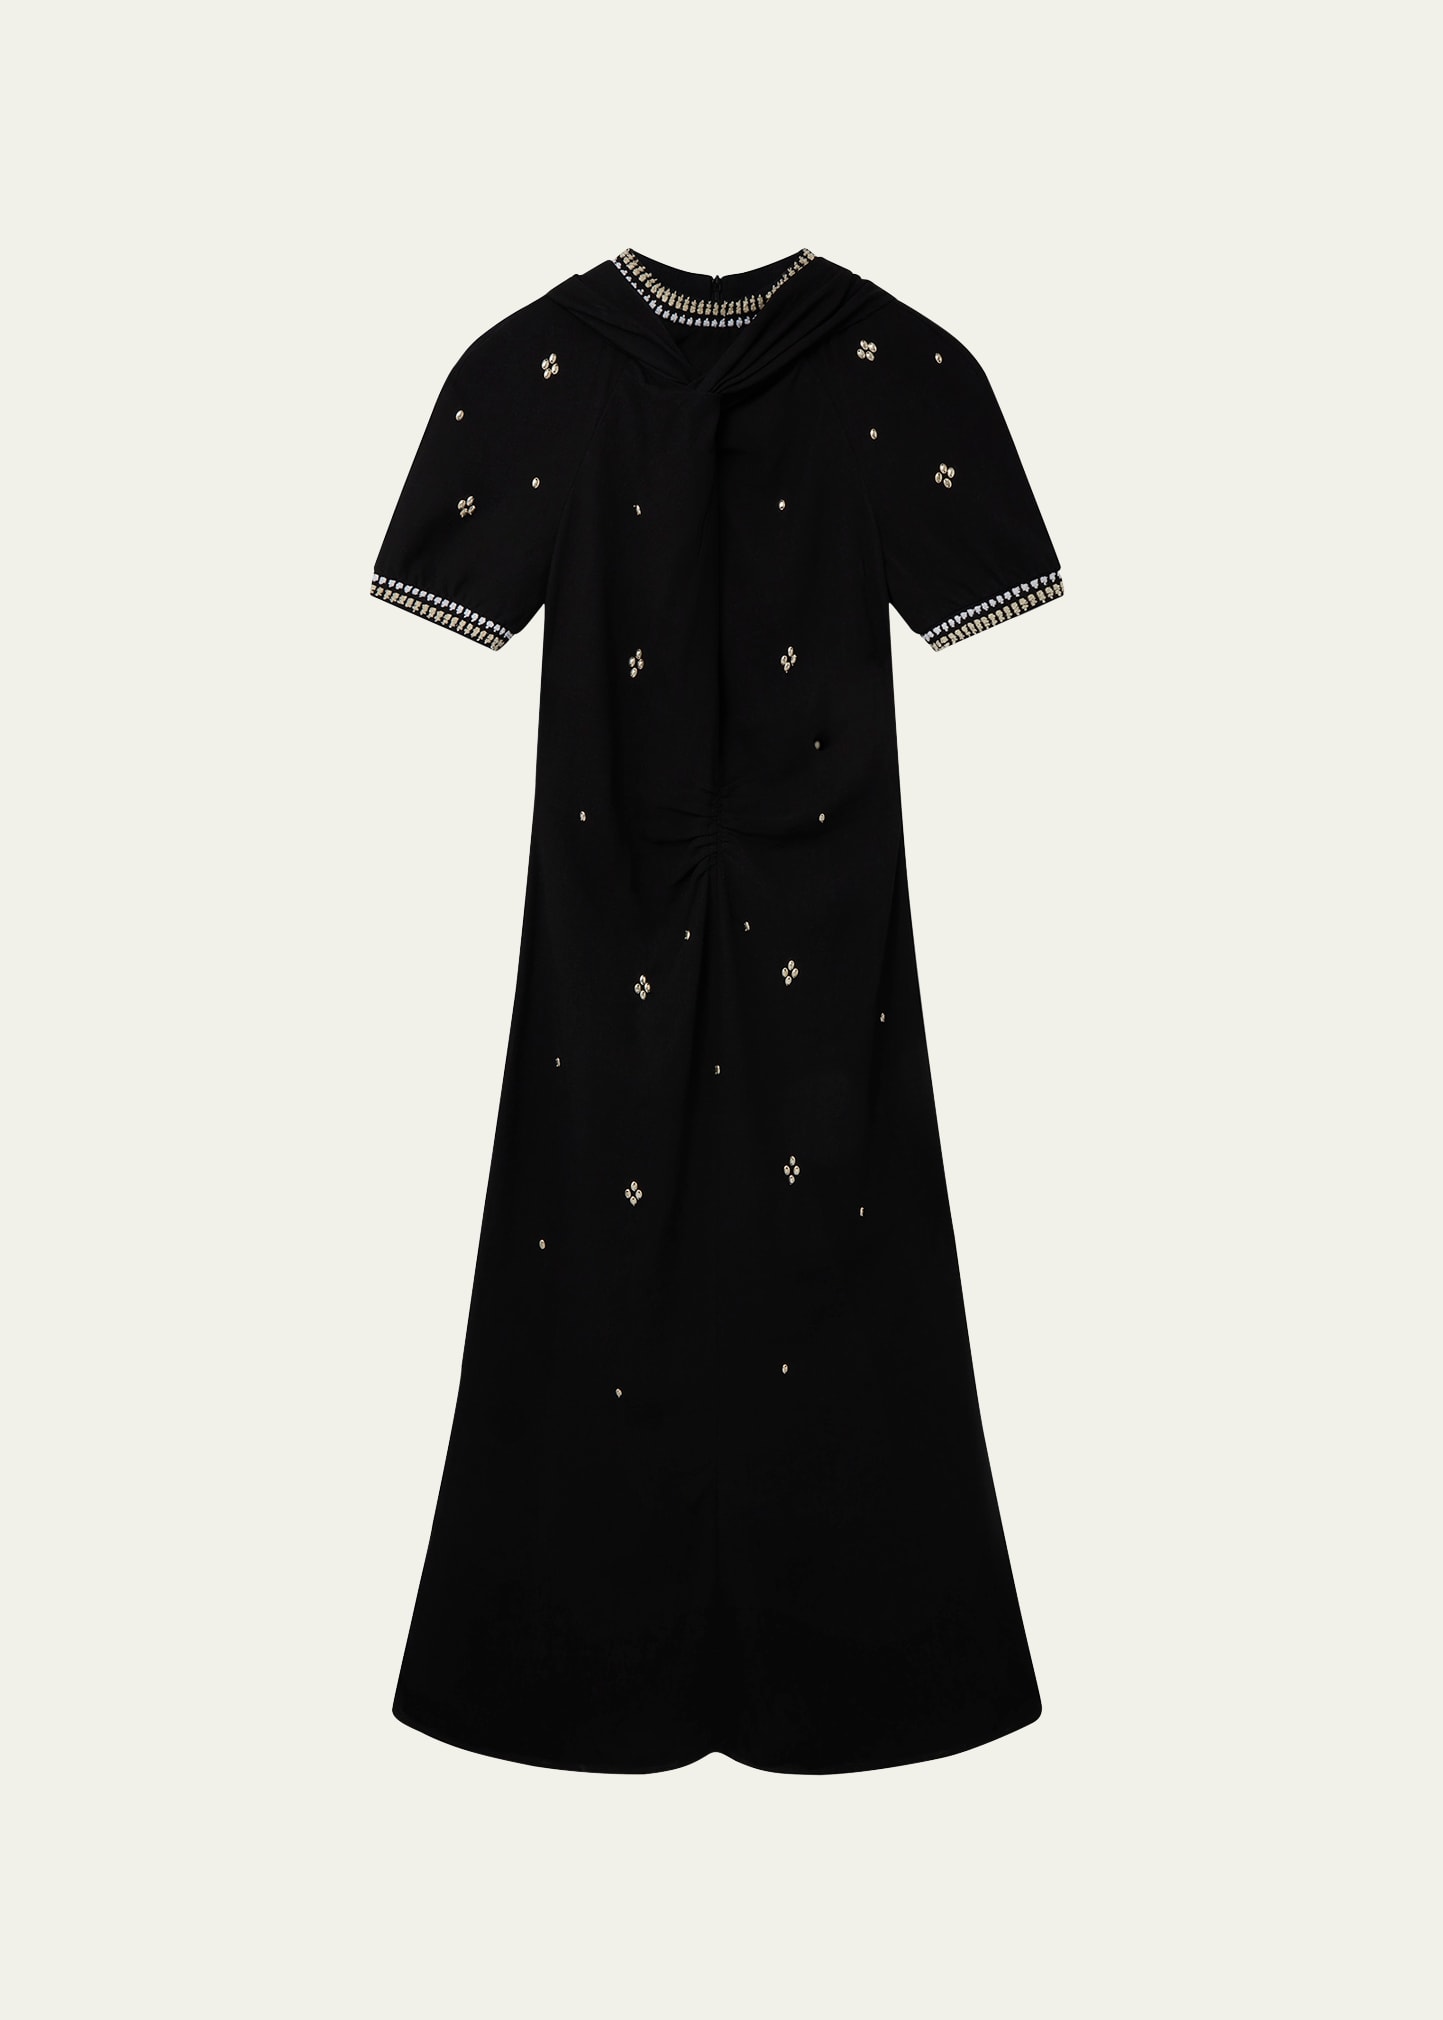 Wales Bonner Wisdom Studded Linen Dress In Black